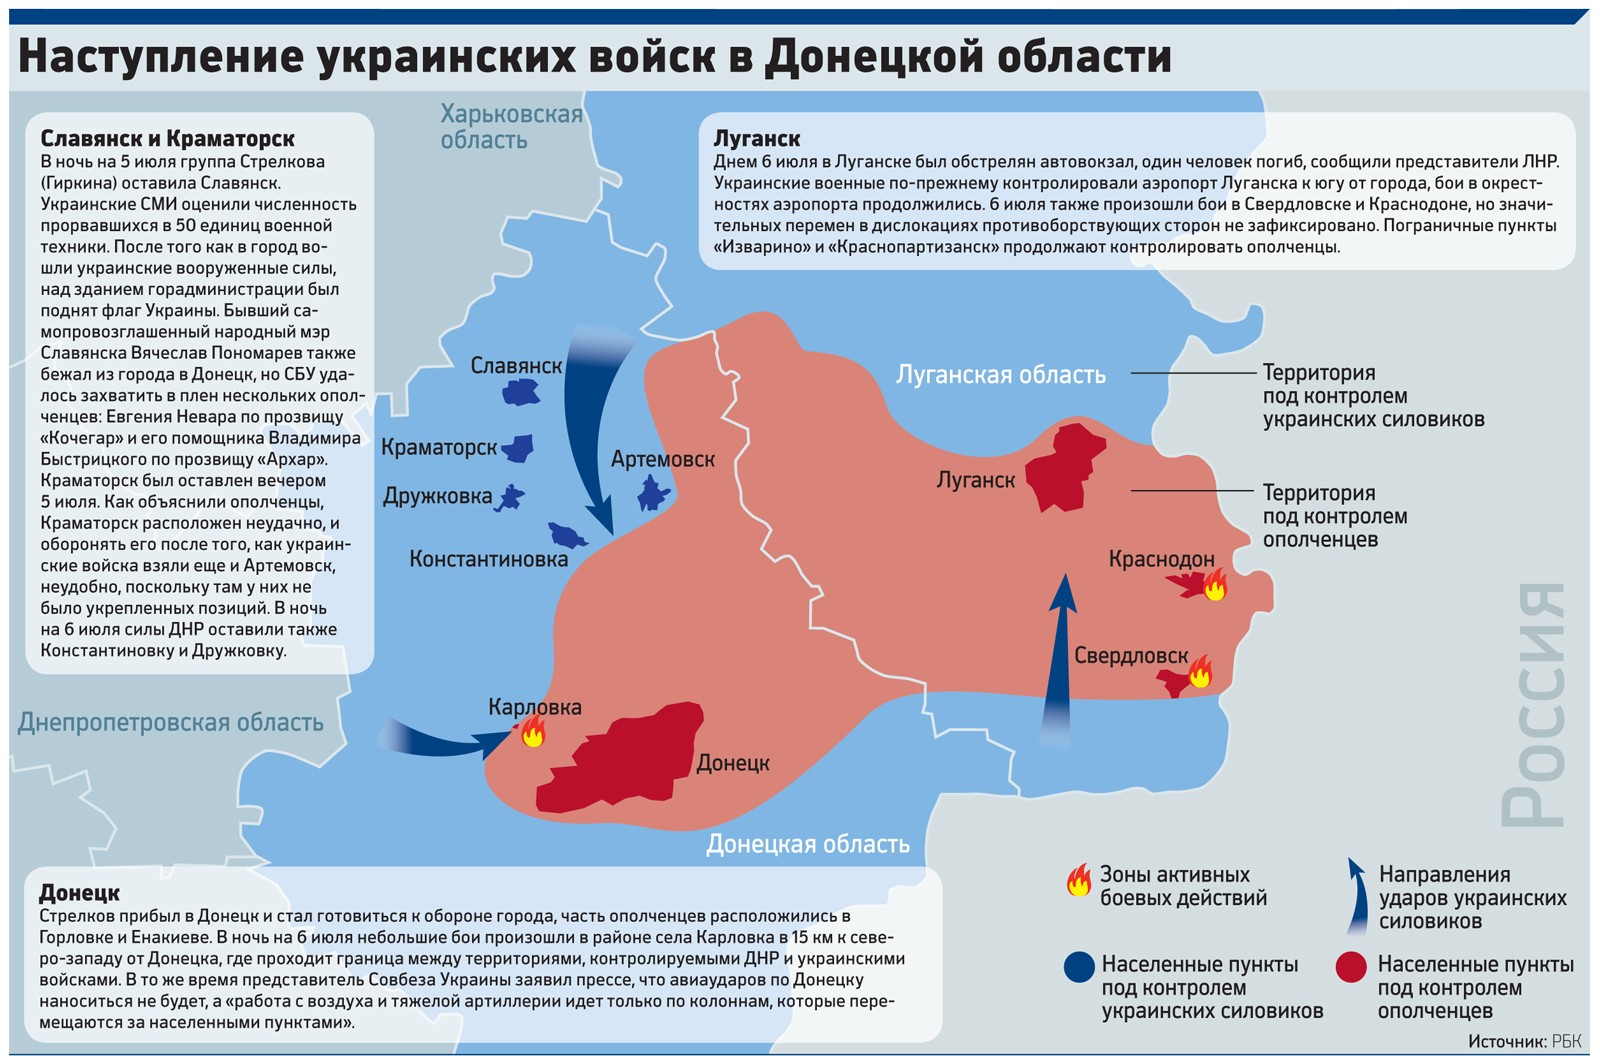 Контролируемая ДНР территория сократилась до пригородов столицы области